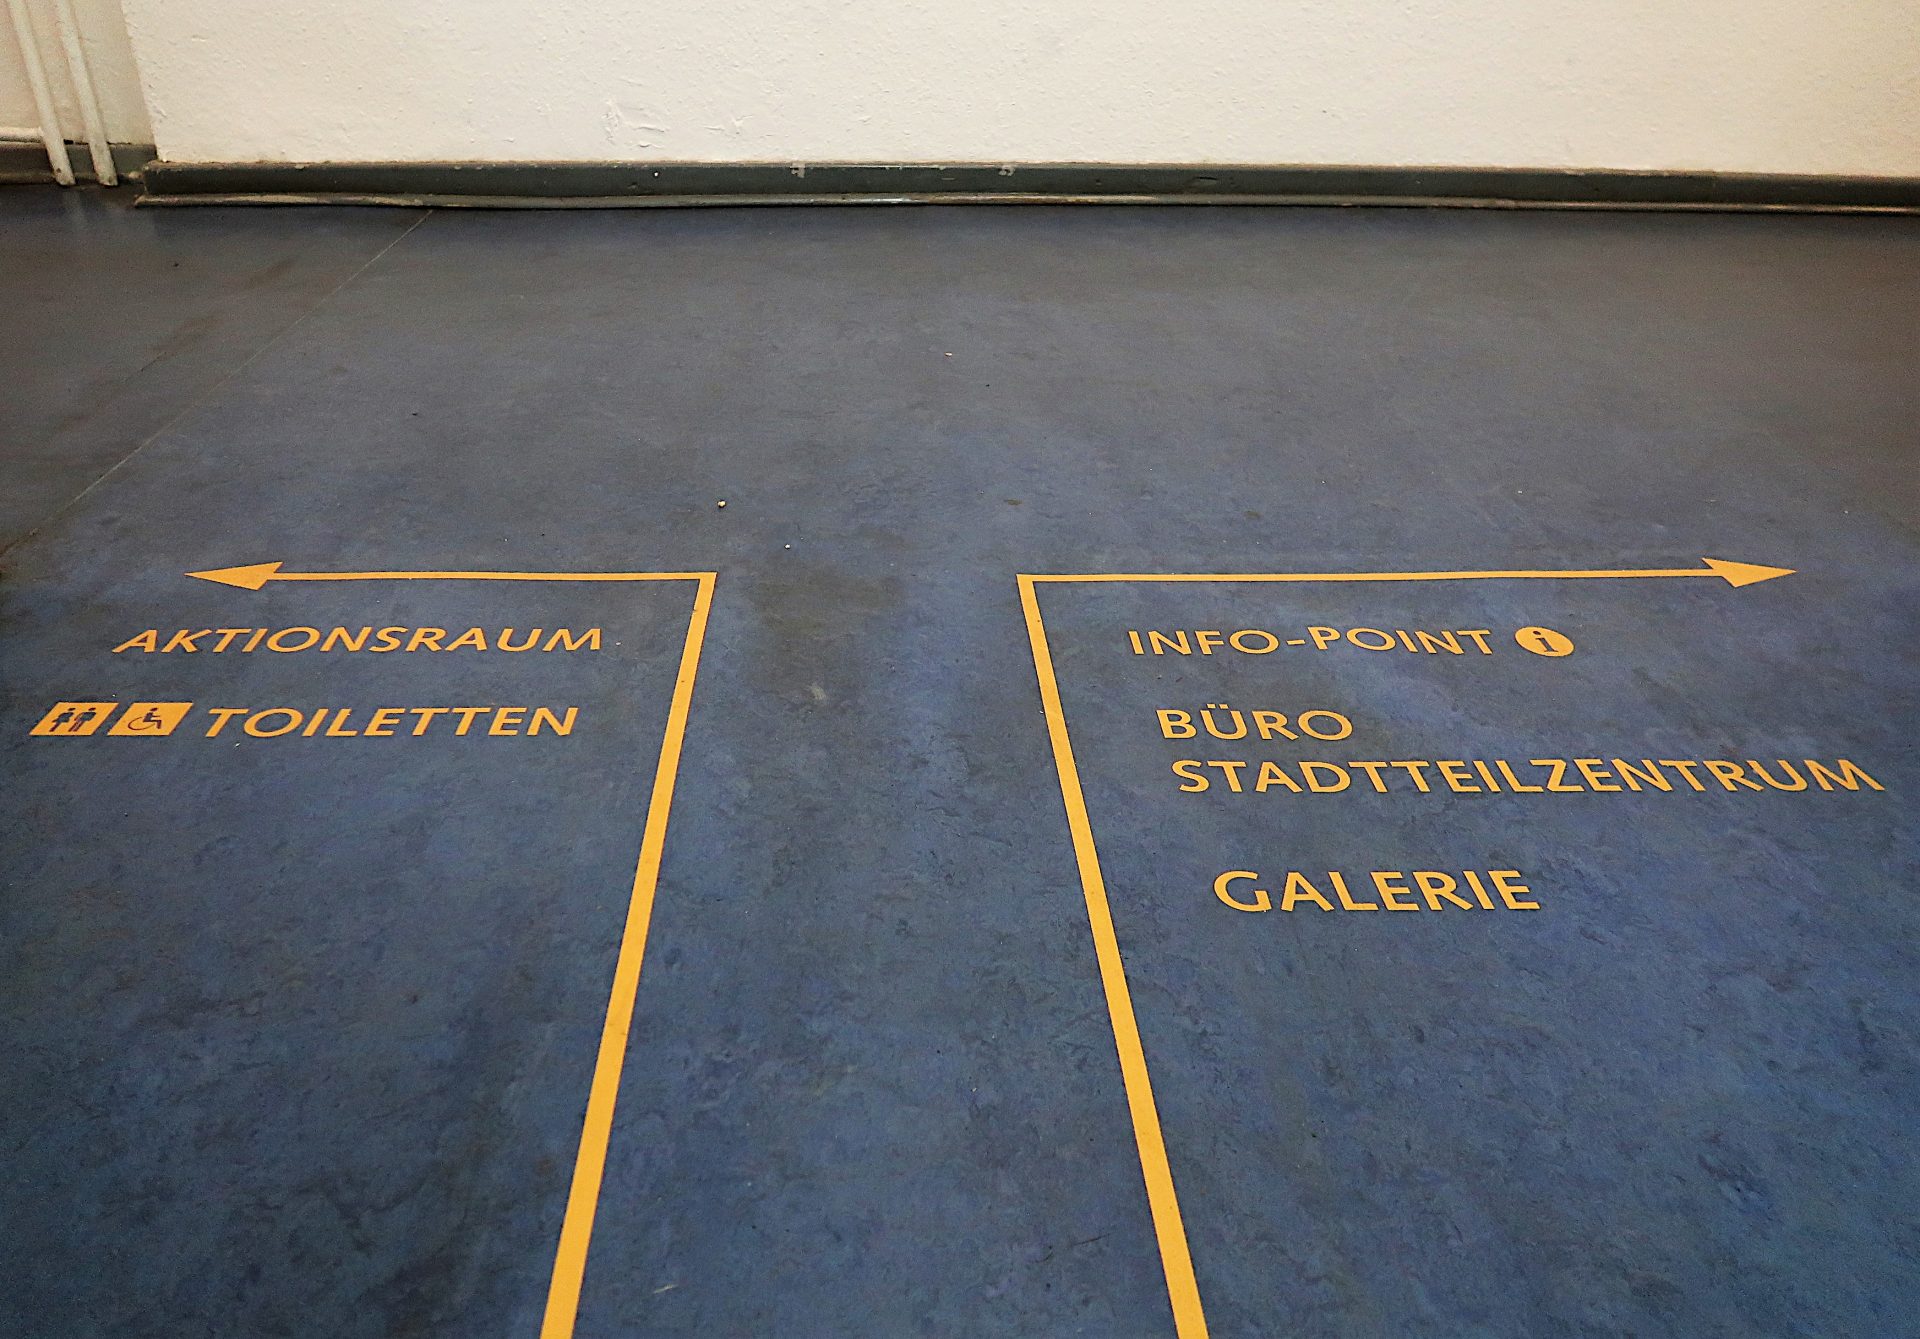 Wege-Leit-System auf dem Fuß-Boden: Ein gelber Pfeil nach Links zeigt Aktions-Raum und Toiletten an, ein Pfeil nach Rechts Info-Point, Büro und Galerie.